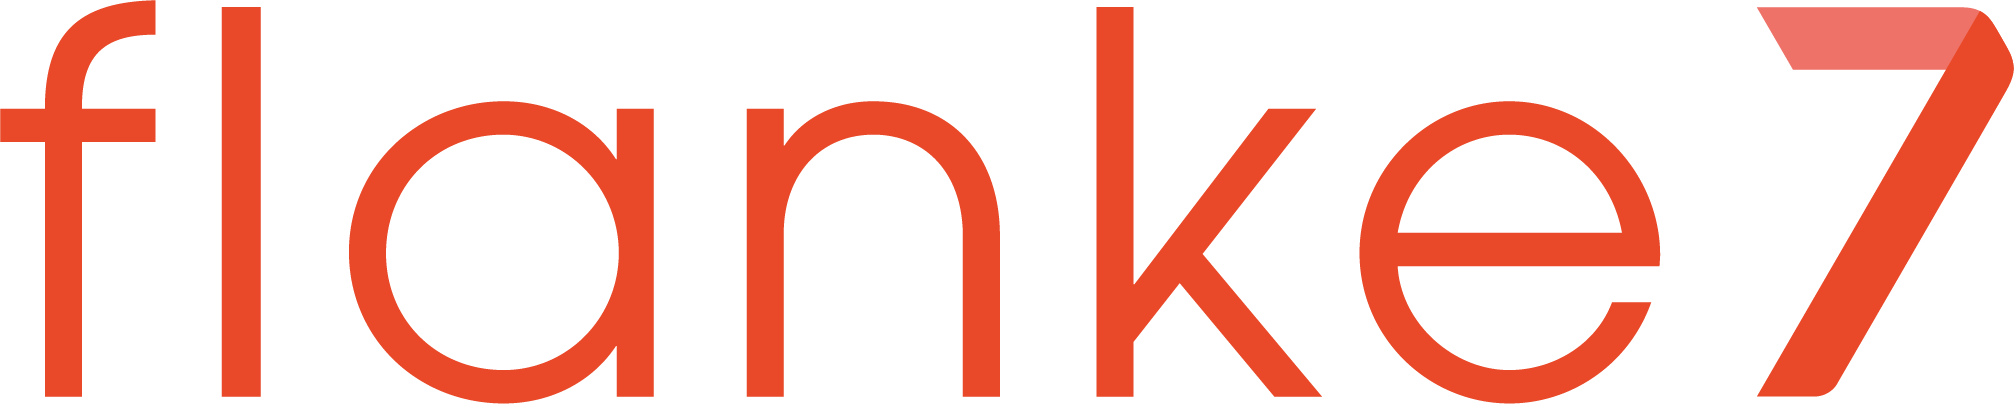 Flanke 7 Logo